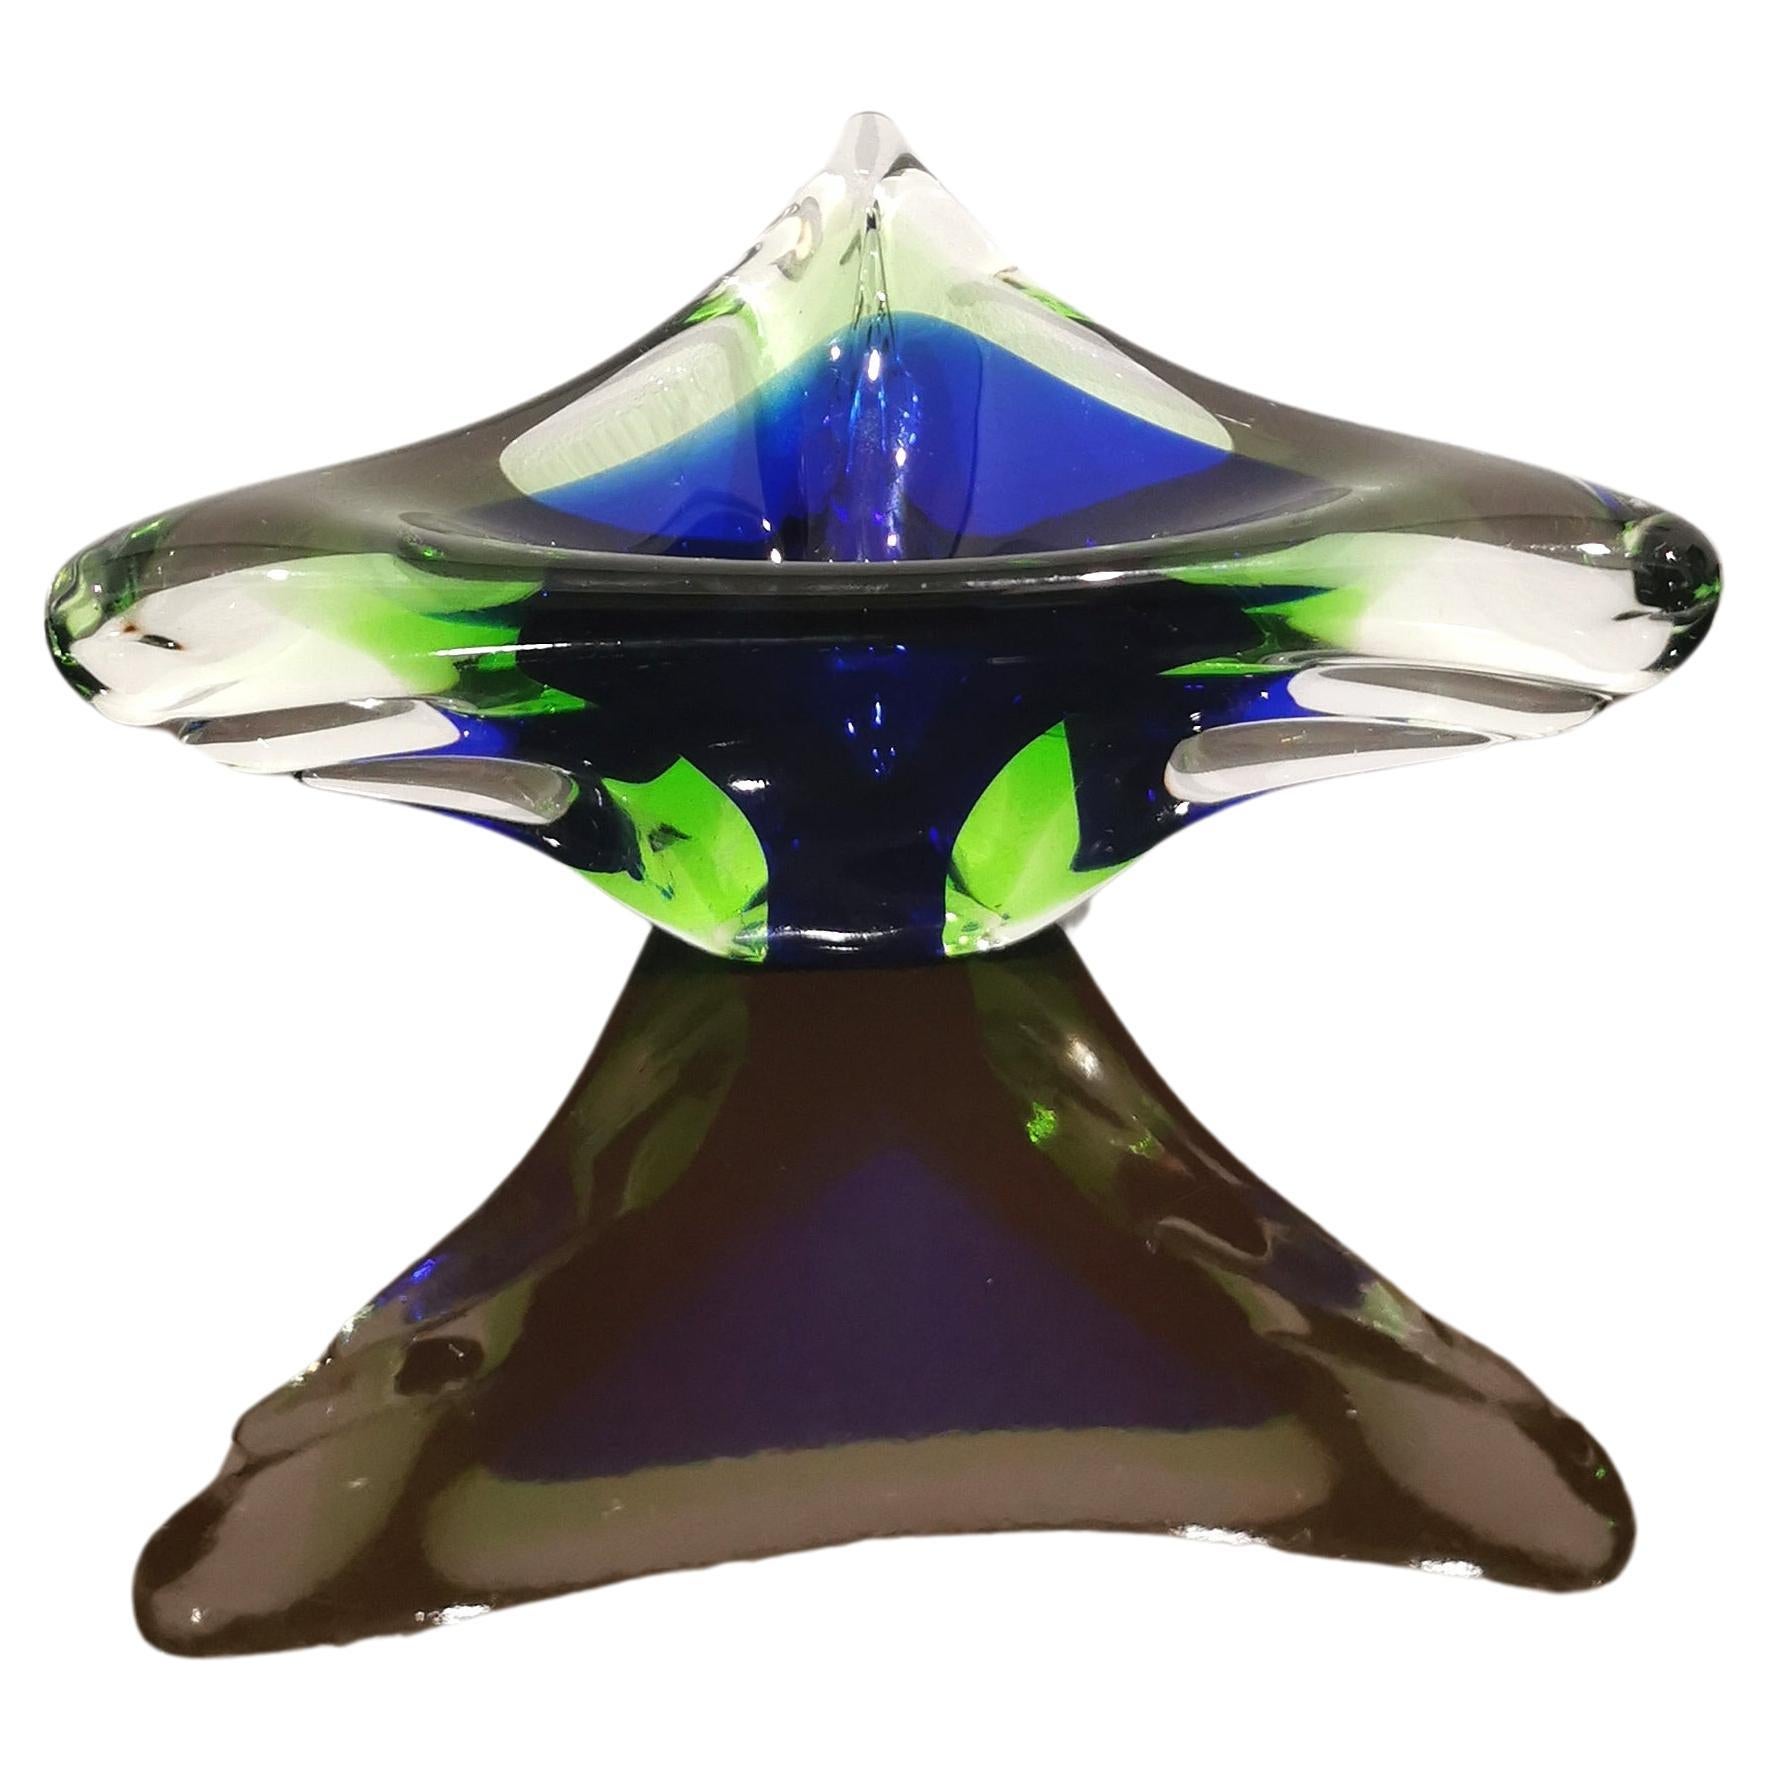 Vide-poche/objet décoratif produit en Italie dans les années 1970. Le vide-poche de forme triangulaire a été réalisé en verre de Murano dans des tons de bleu nuit, vert bouteille et transparent avec la célèbre technique du 